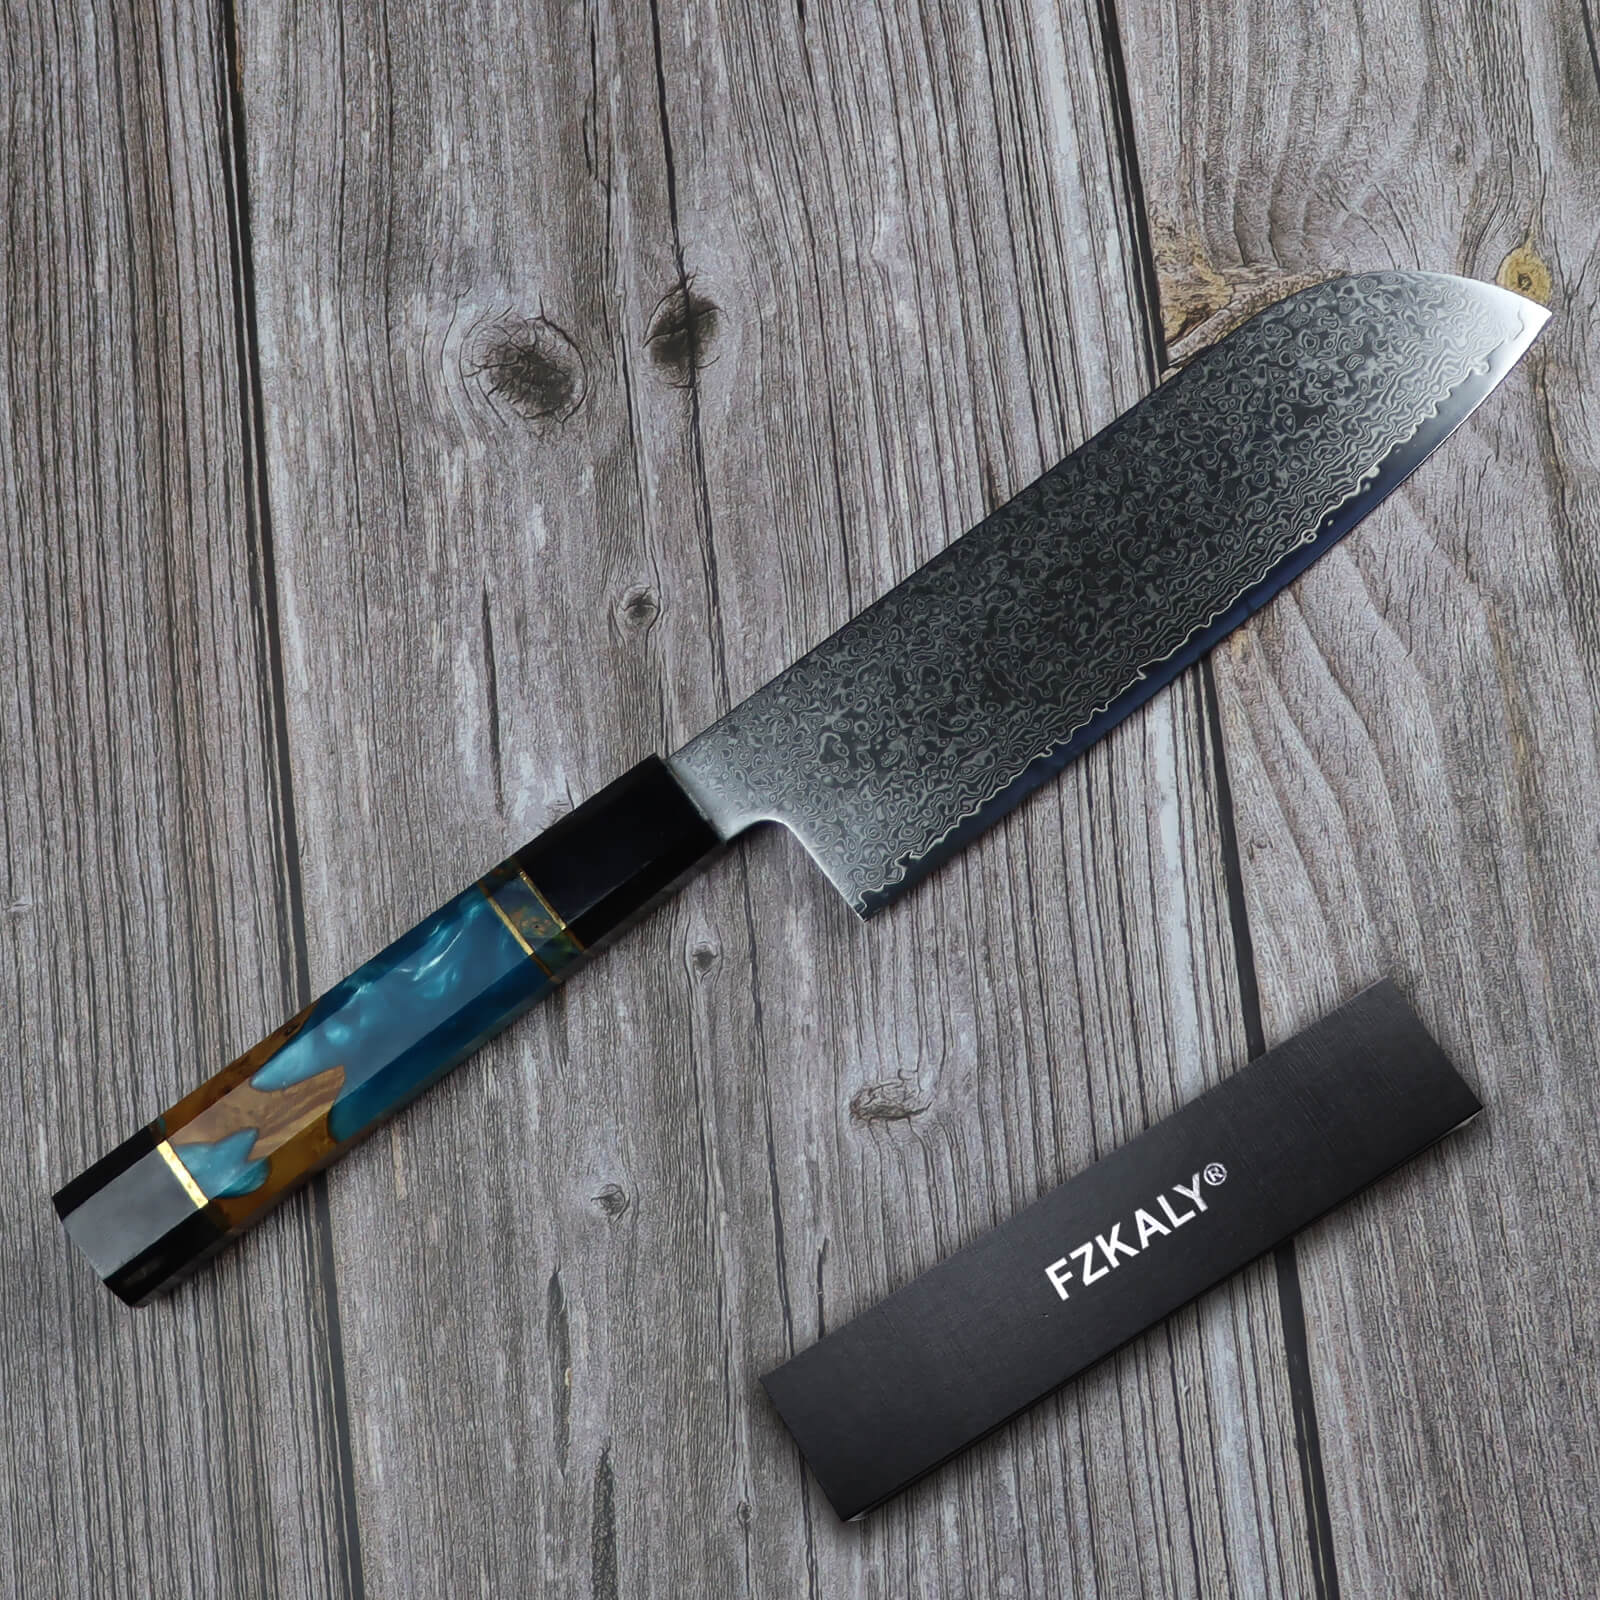 Fzkaly Santoku Chef Knife